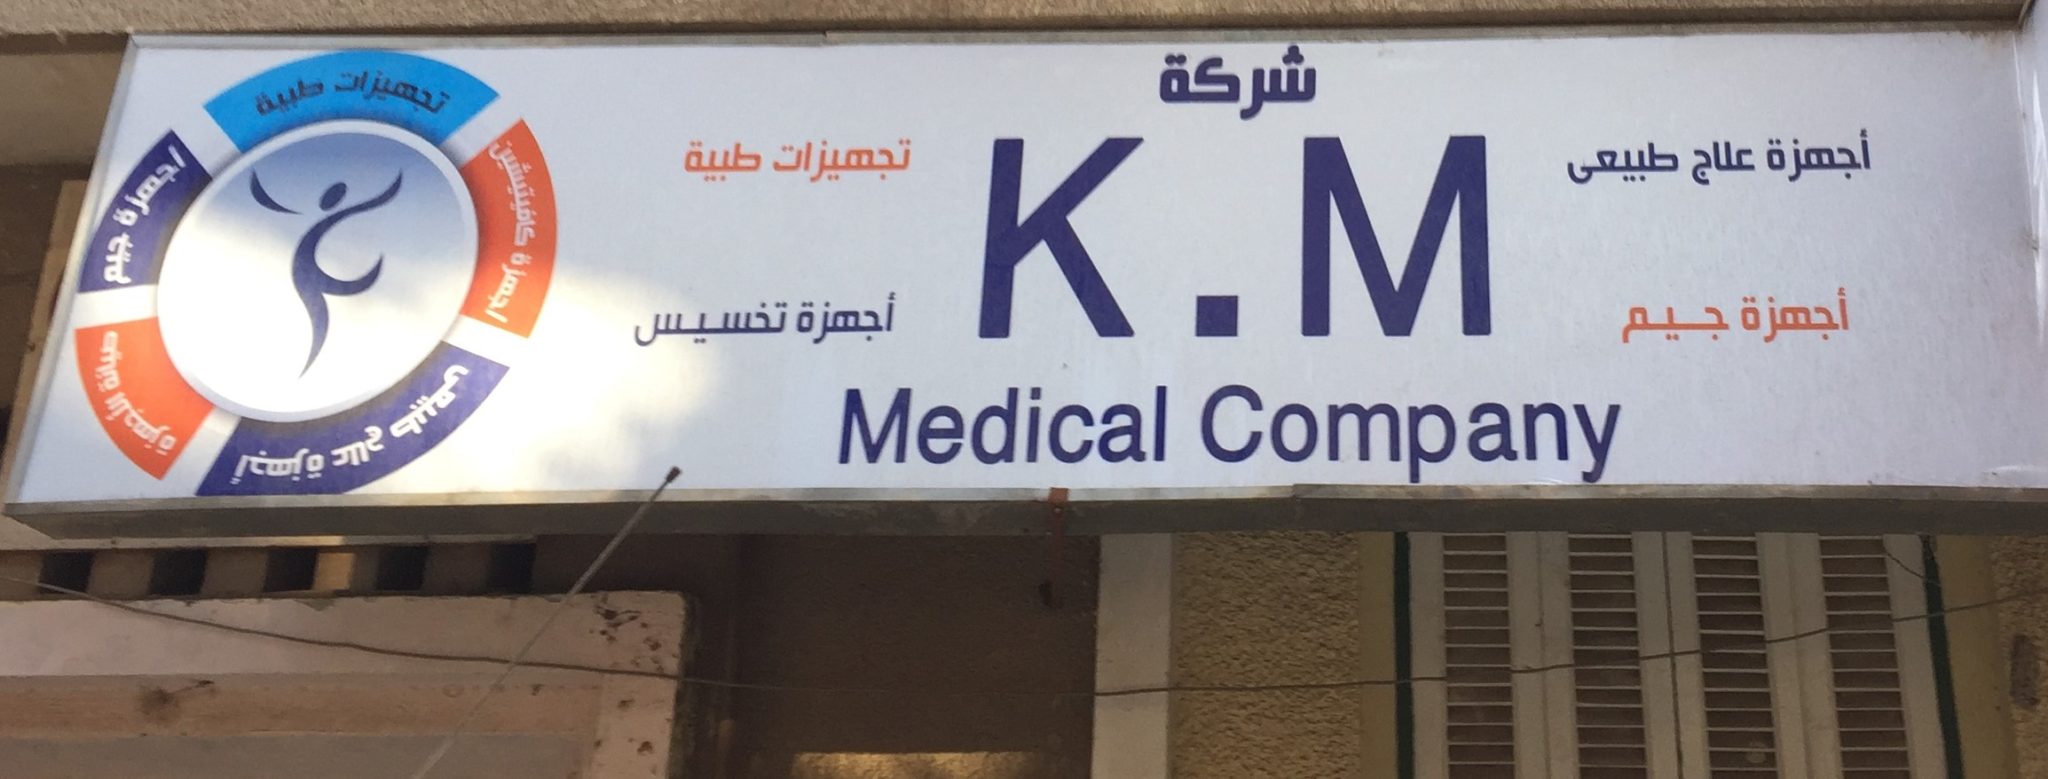 شركة K.M medical company للأجهزة الطبية والرياضية